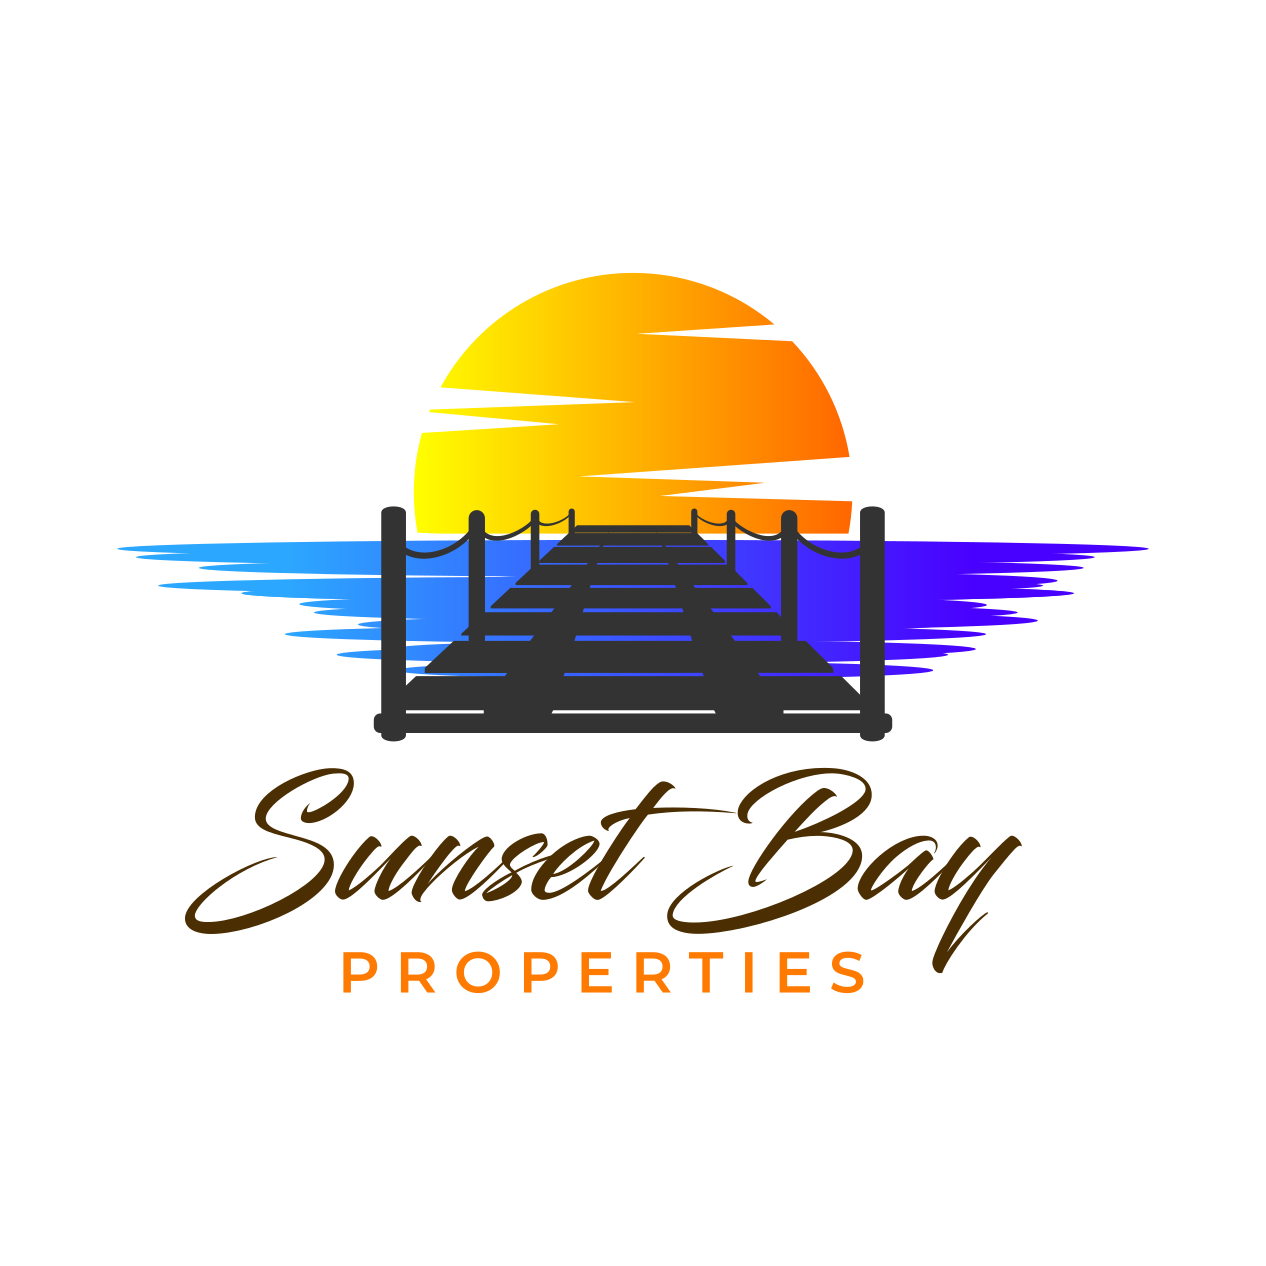 Sunset Bay Properties 424 Main St, Luxemburg Wisconsin 54217